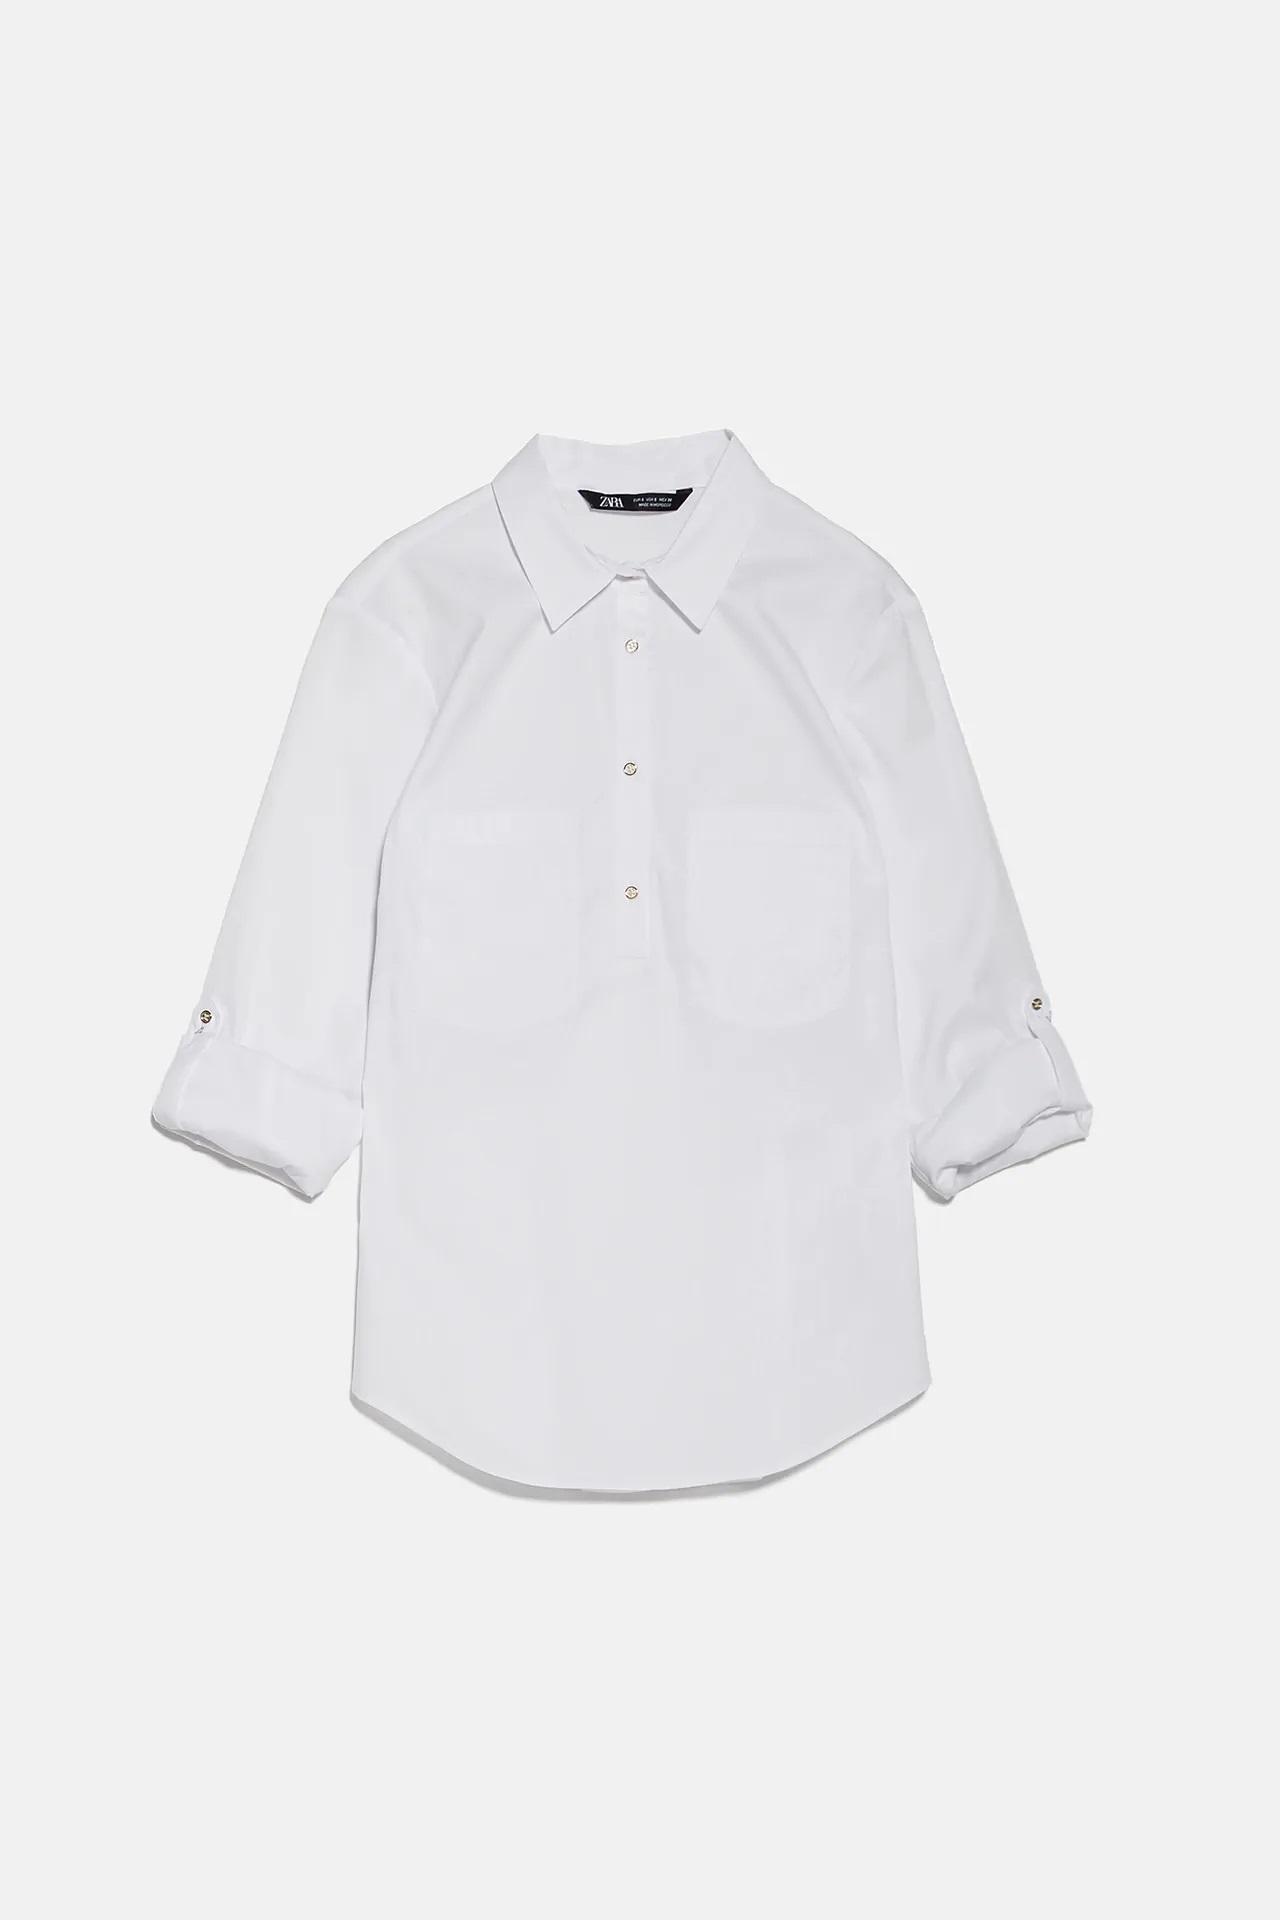 Estas son las camisas blancas de Zara que enamorarían a la princesa Grace Kelly